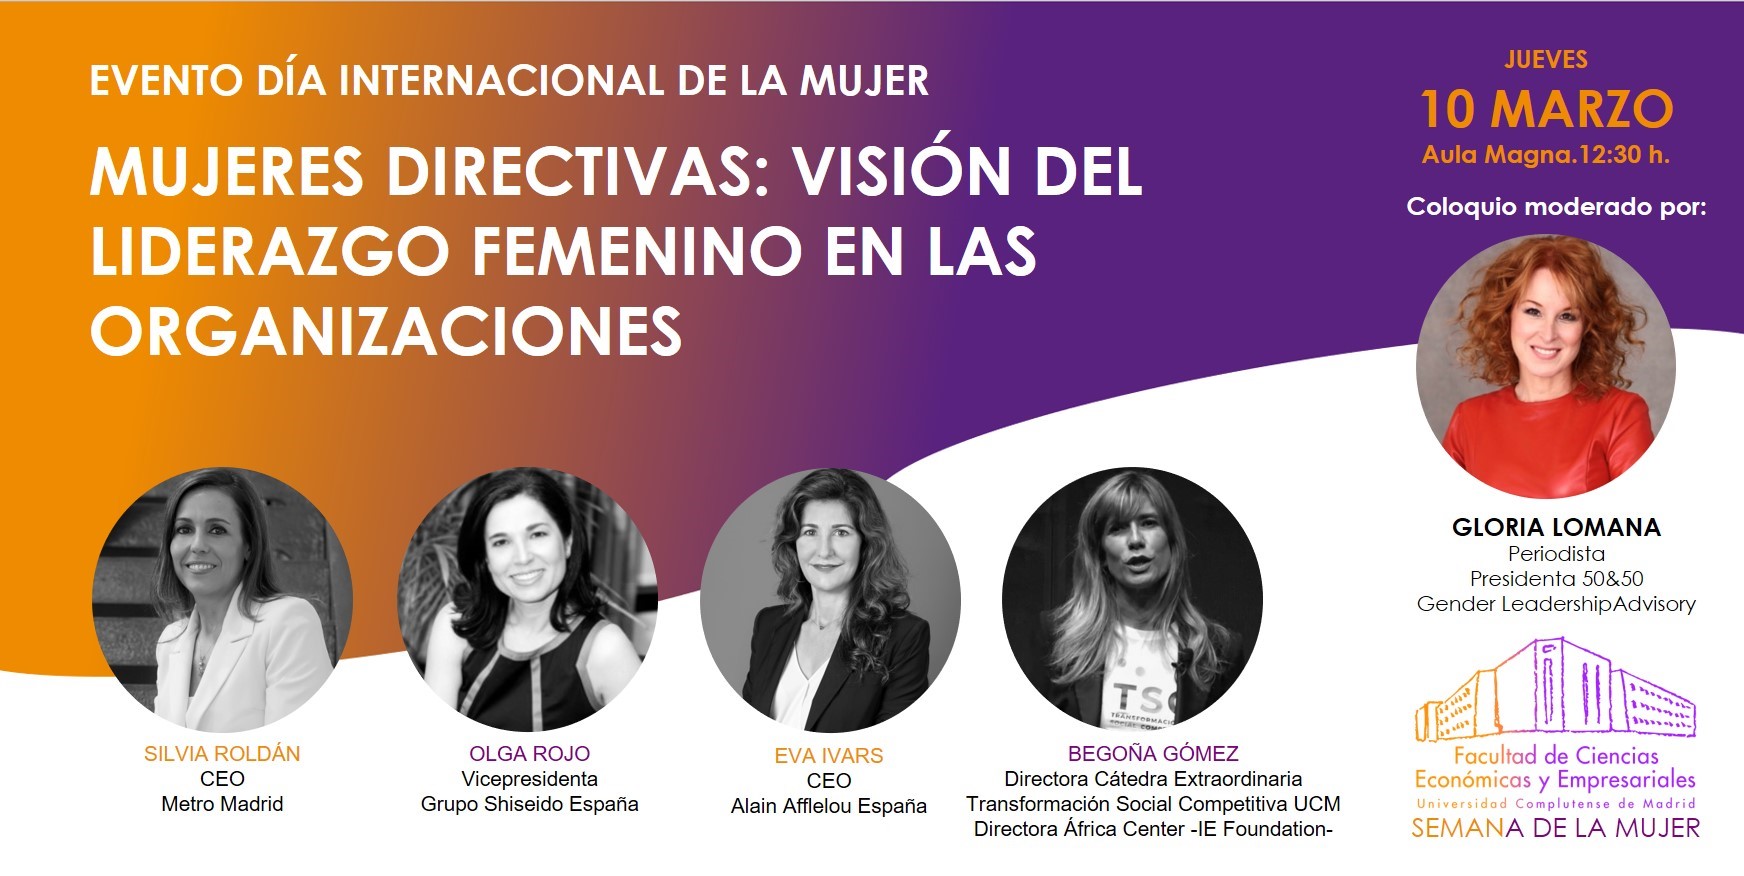 Coloquio "Mujeres Directivas: Visión del Liderazgo Femenino en las Organizaciones", grabación disponible